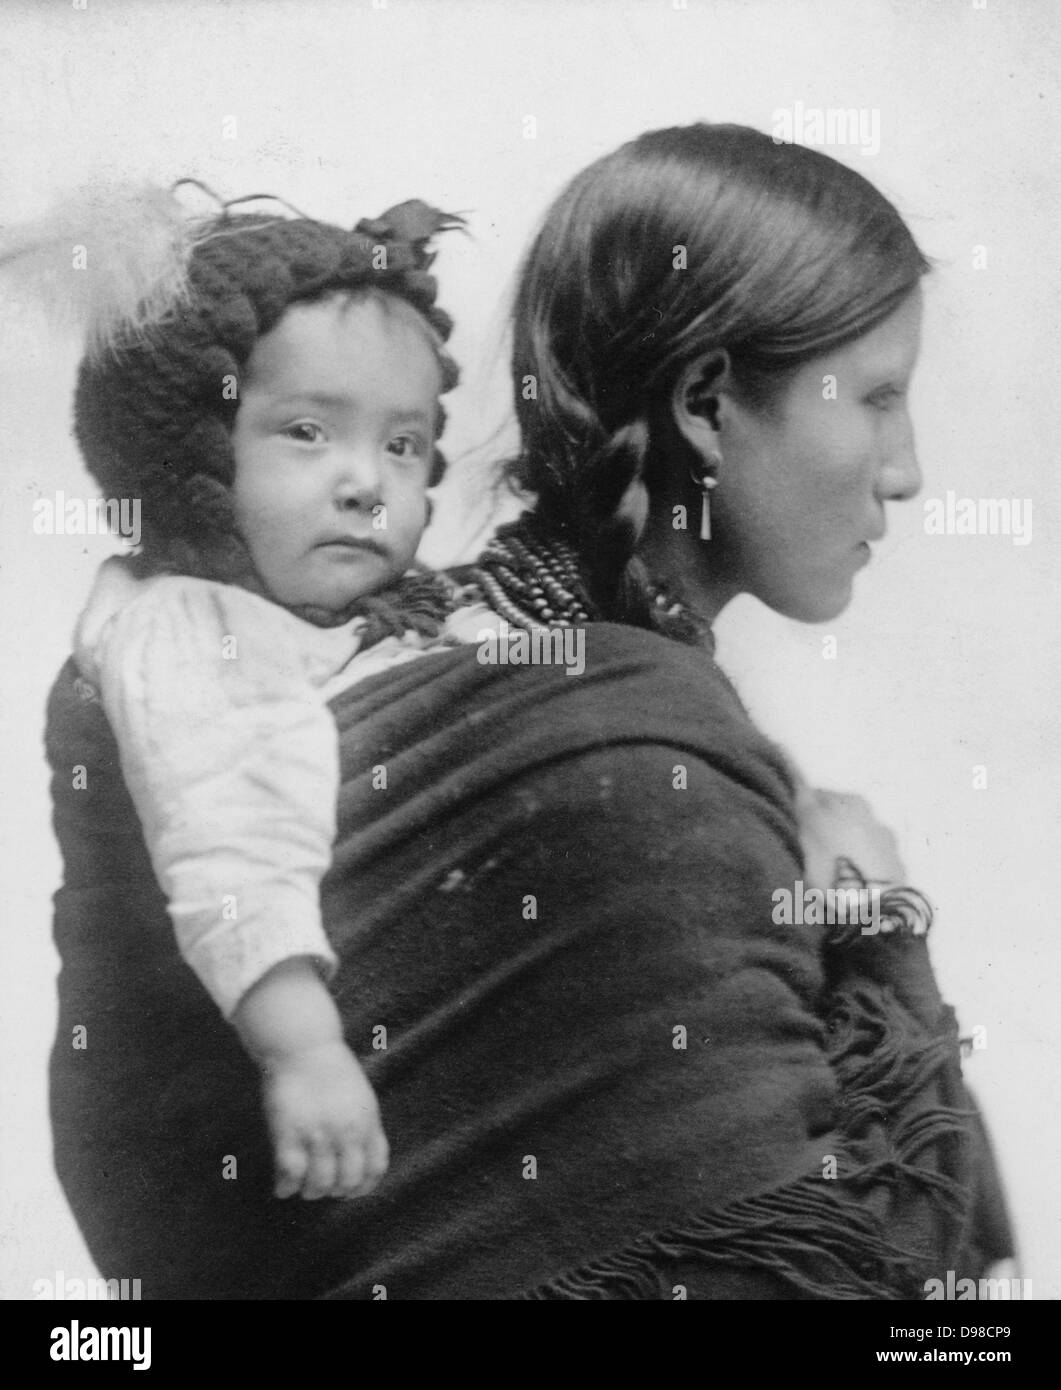 Mujer americana nativa de la región de Los Llanos, de media longitud vertical, mirando hacia la derecha, con un bebé sobre su espalda. Siglo XX siglo xx Foto de stock